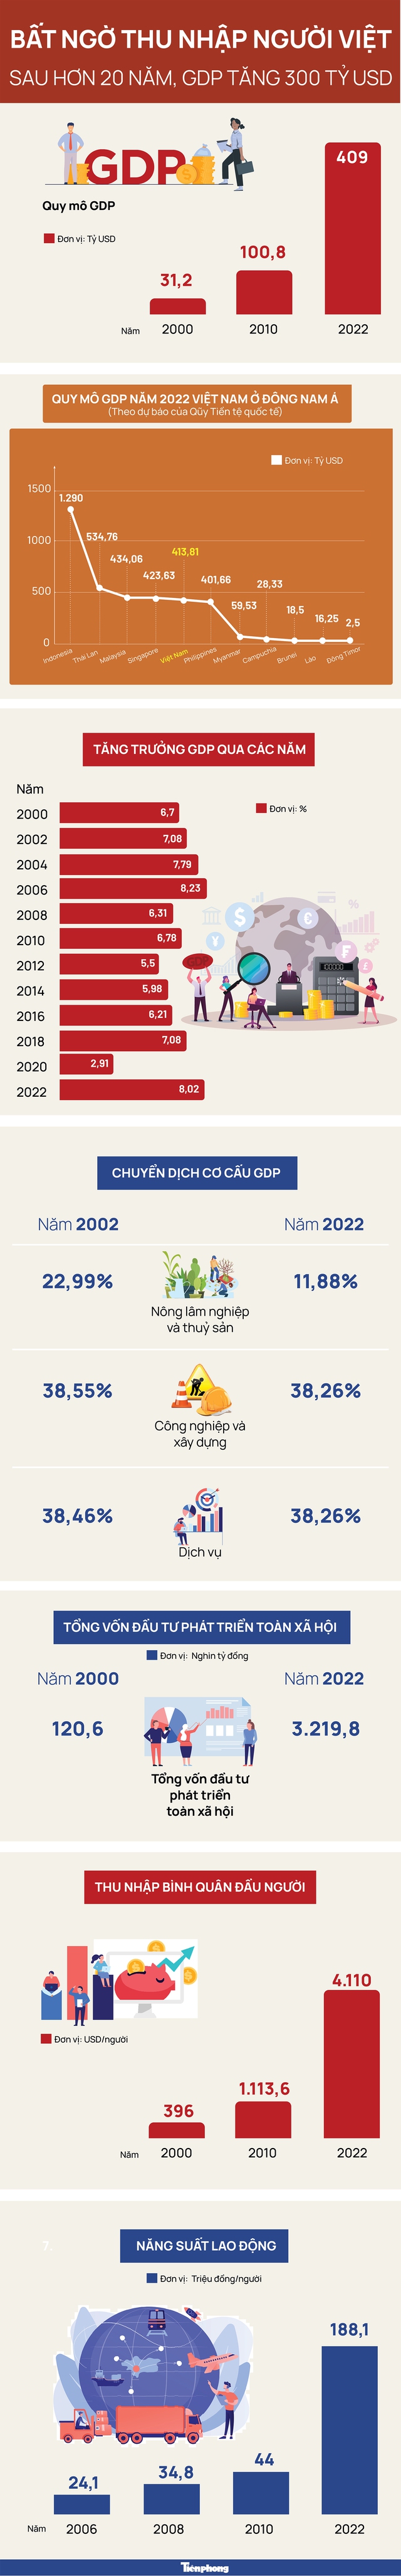 Bất ngờ thu nhập người Việt sau hơn 20 năm GDP tăng 300 tỷ USD - Ảnh 1.